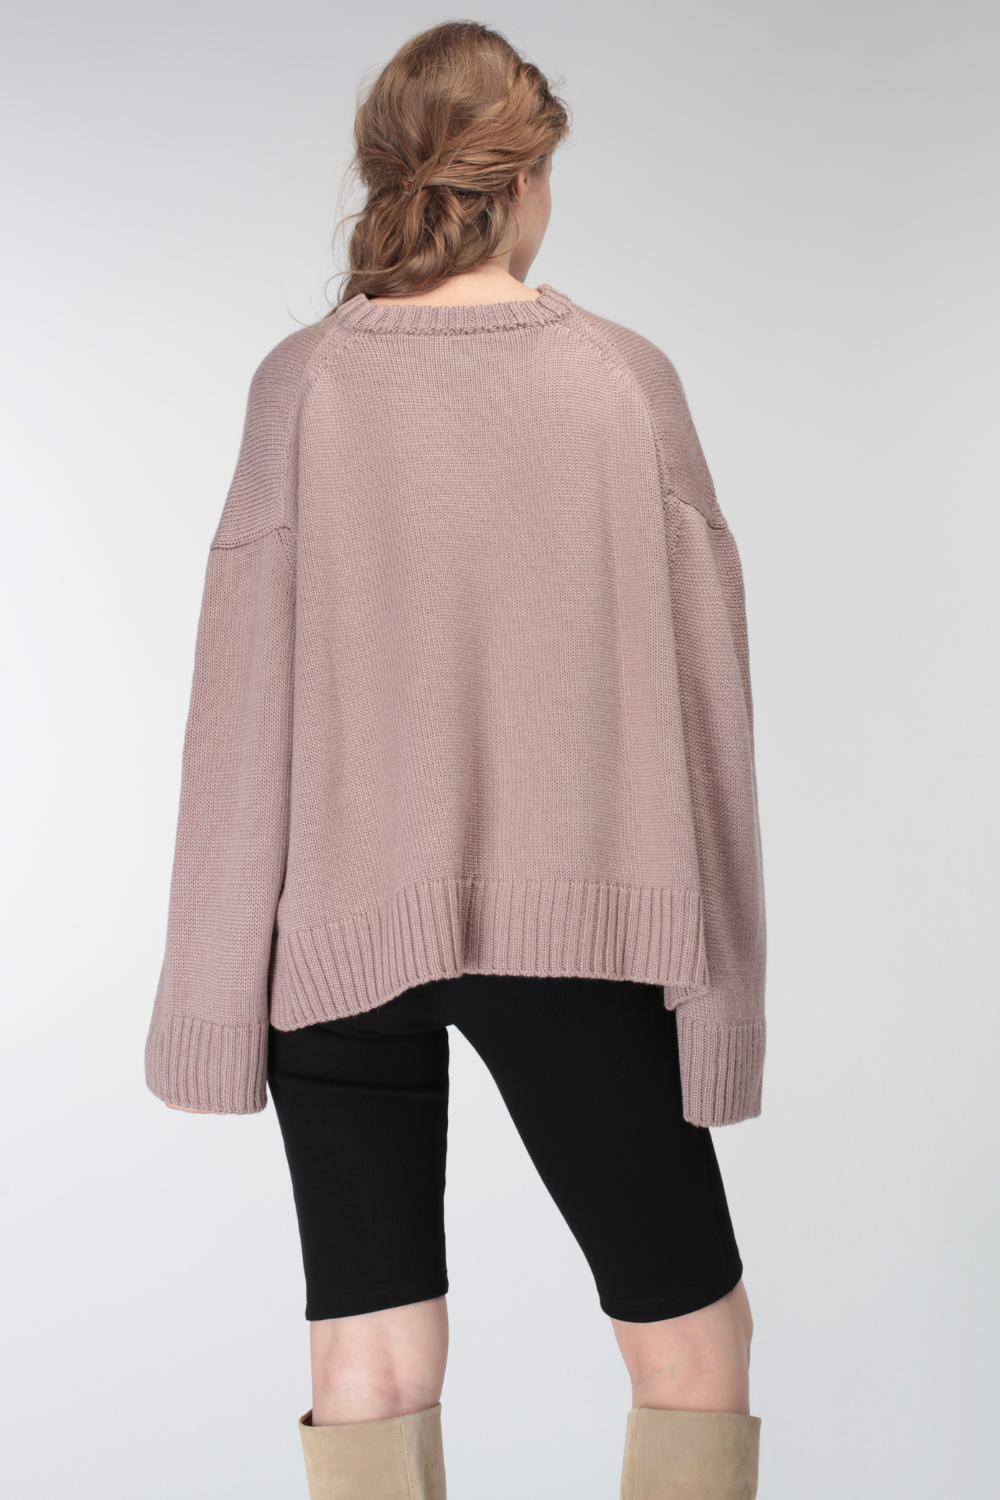 Objemový pulovr z vlny bez hrdla (Miss Secret) PU-015